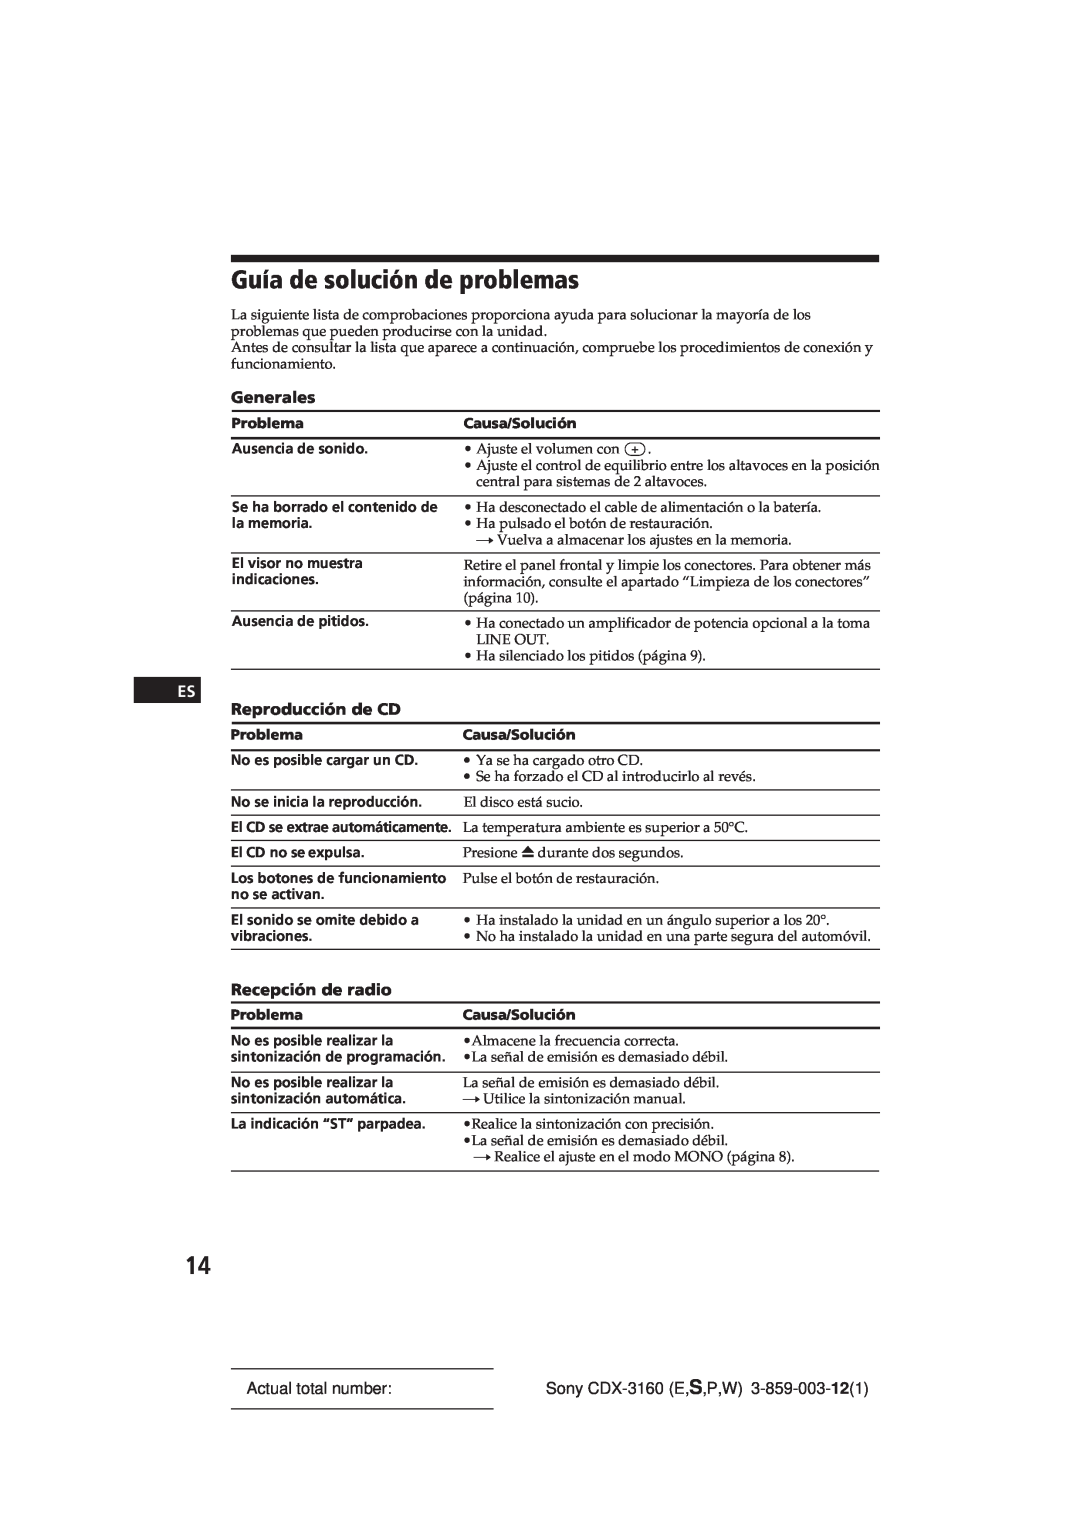 Sony CDX-3160 manual Guía de solución de problemas, Reproducción de CD, Recepción de radio, Generales, Actual total number 